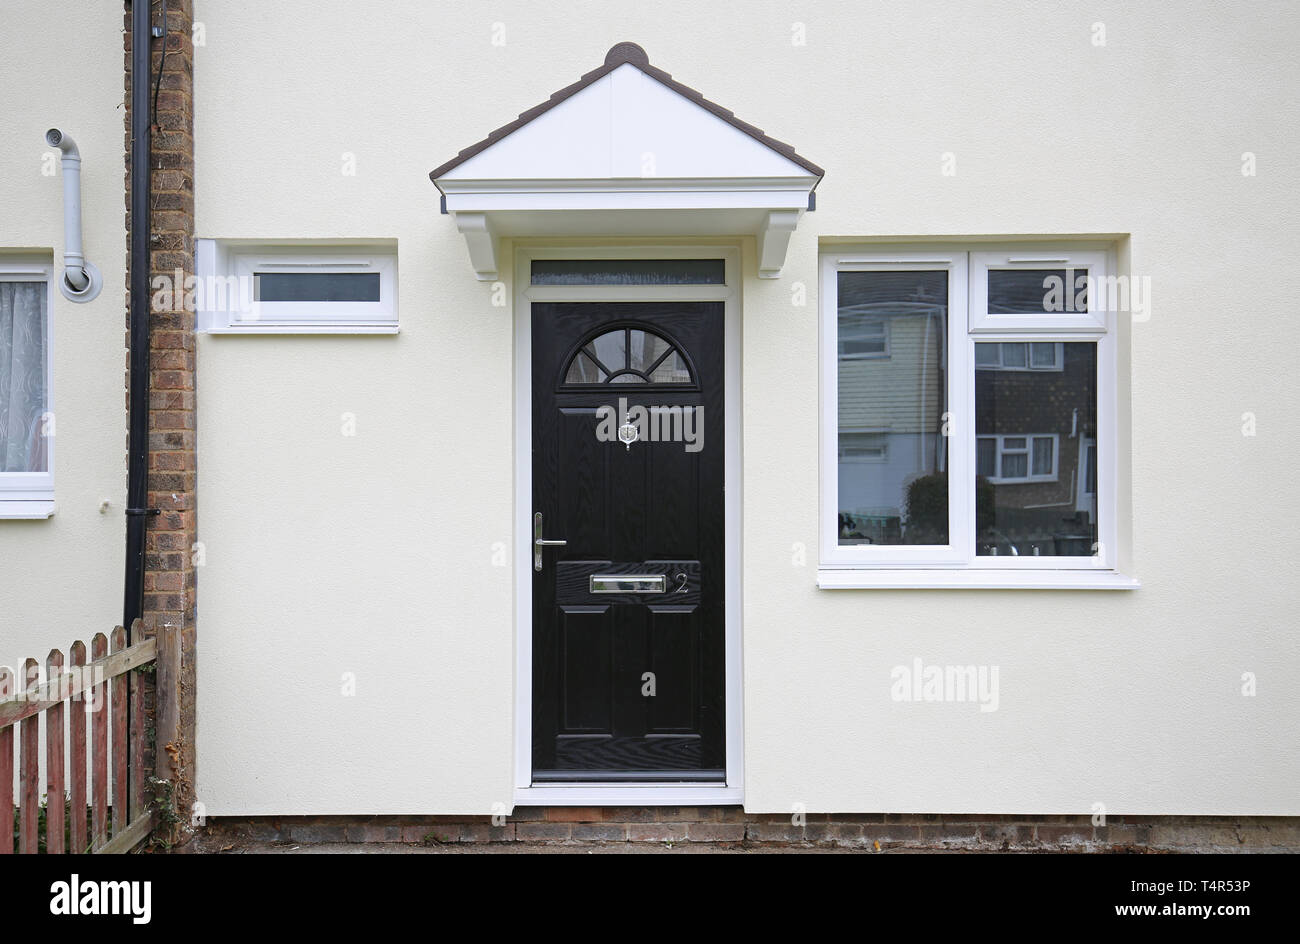 Nahaufnahme eines Hauses auf einem 1970er Rat Immobilien in Basildon, Großbritannien, mit neu installierten externen Wärmedämmung (in weiß). Stockfoto